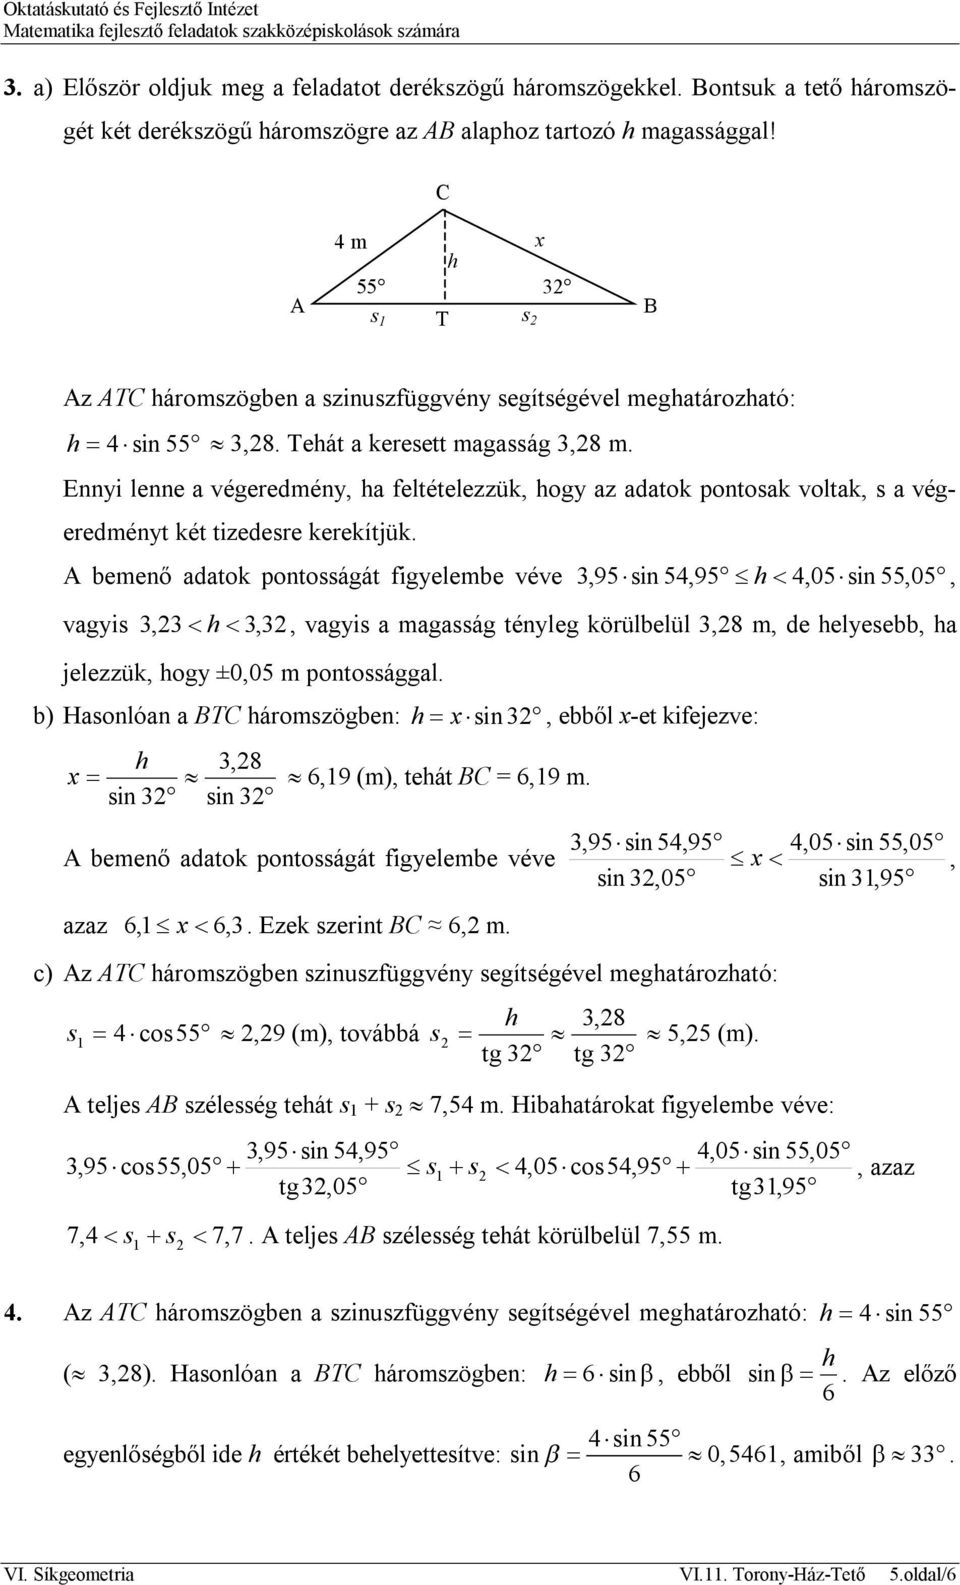 btc 1 félév matematikai vizsga papír)